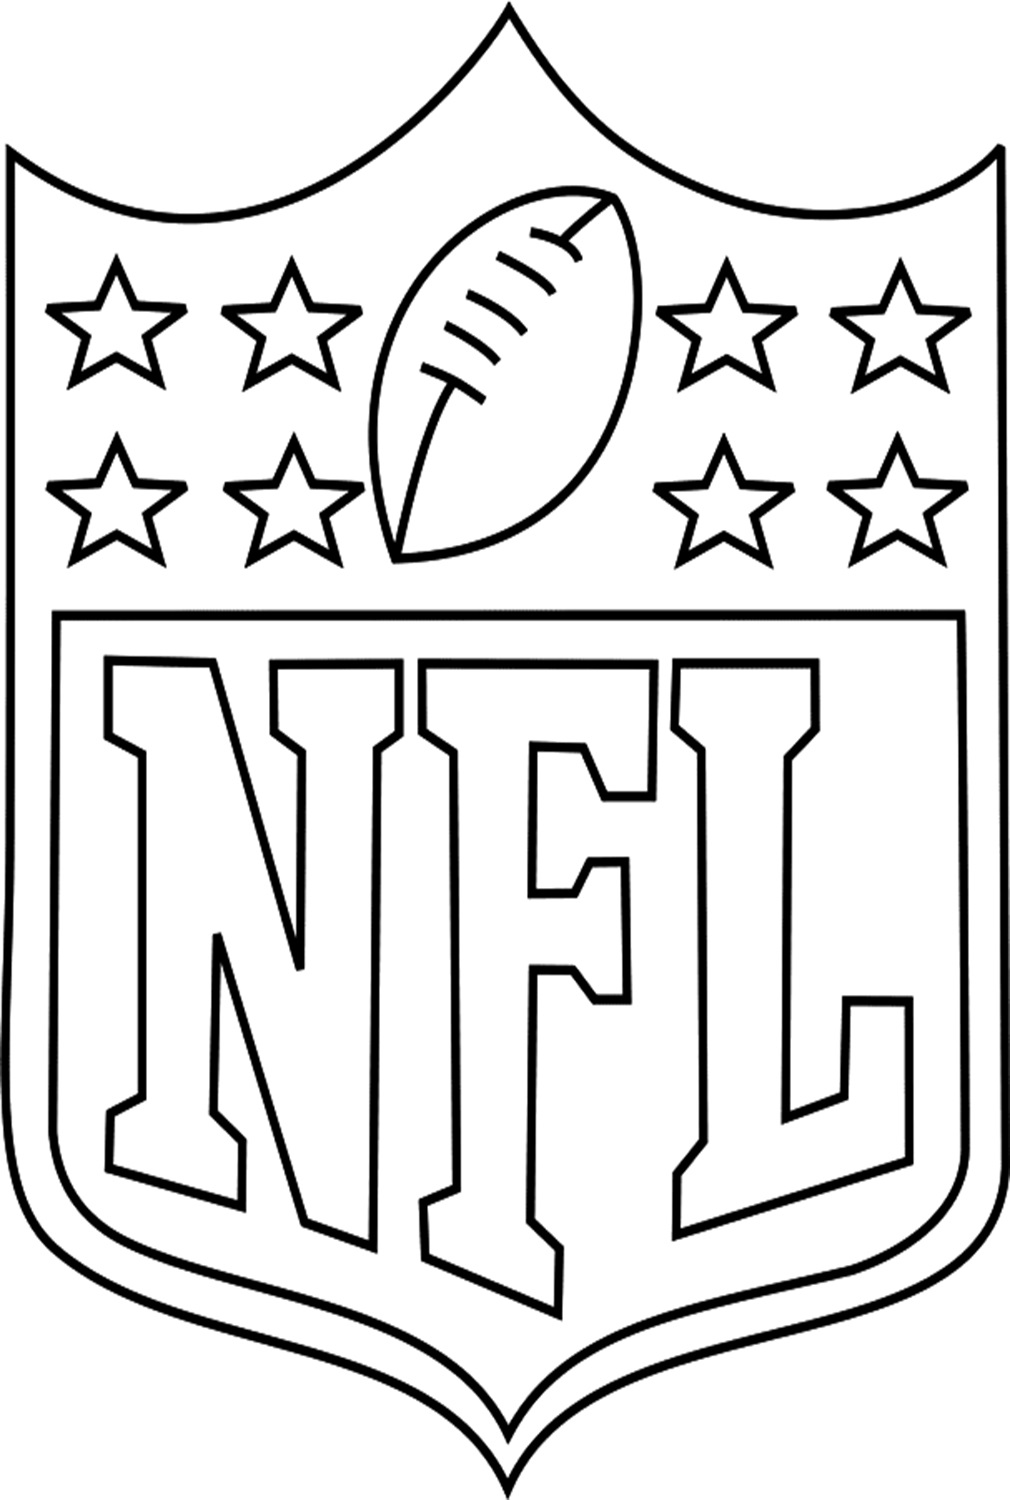 Logotipo de la NFL de la NFL